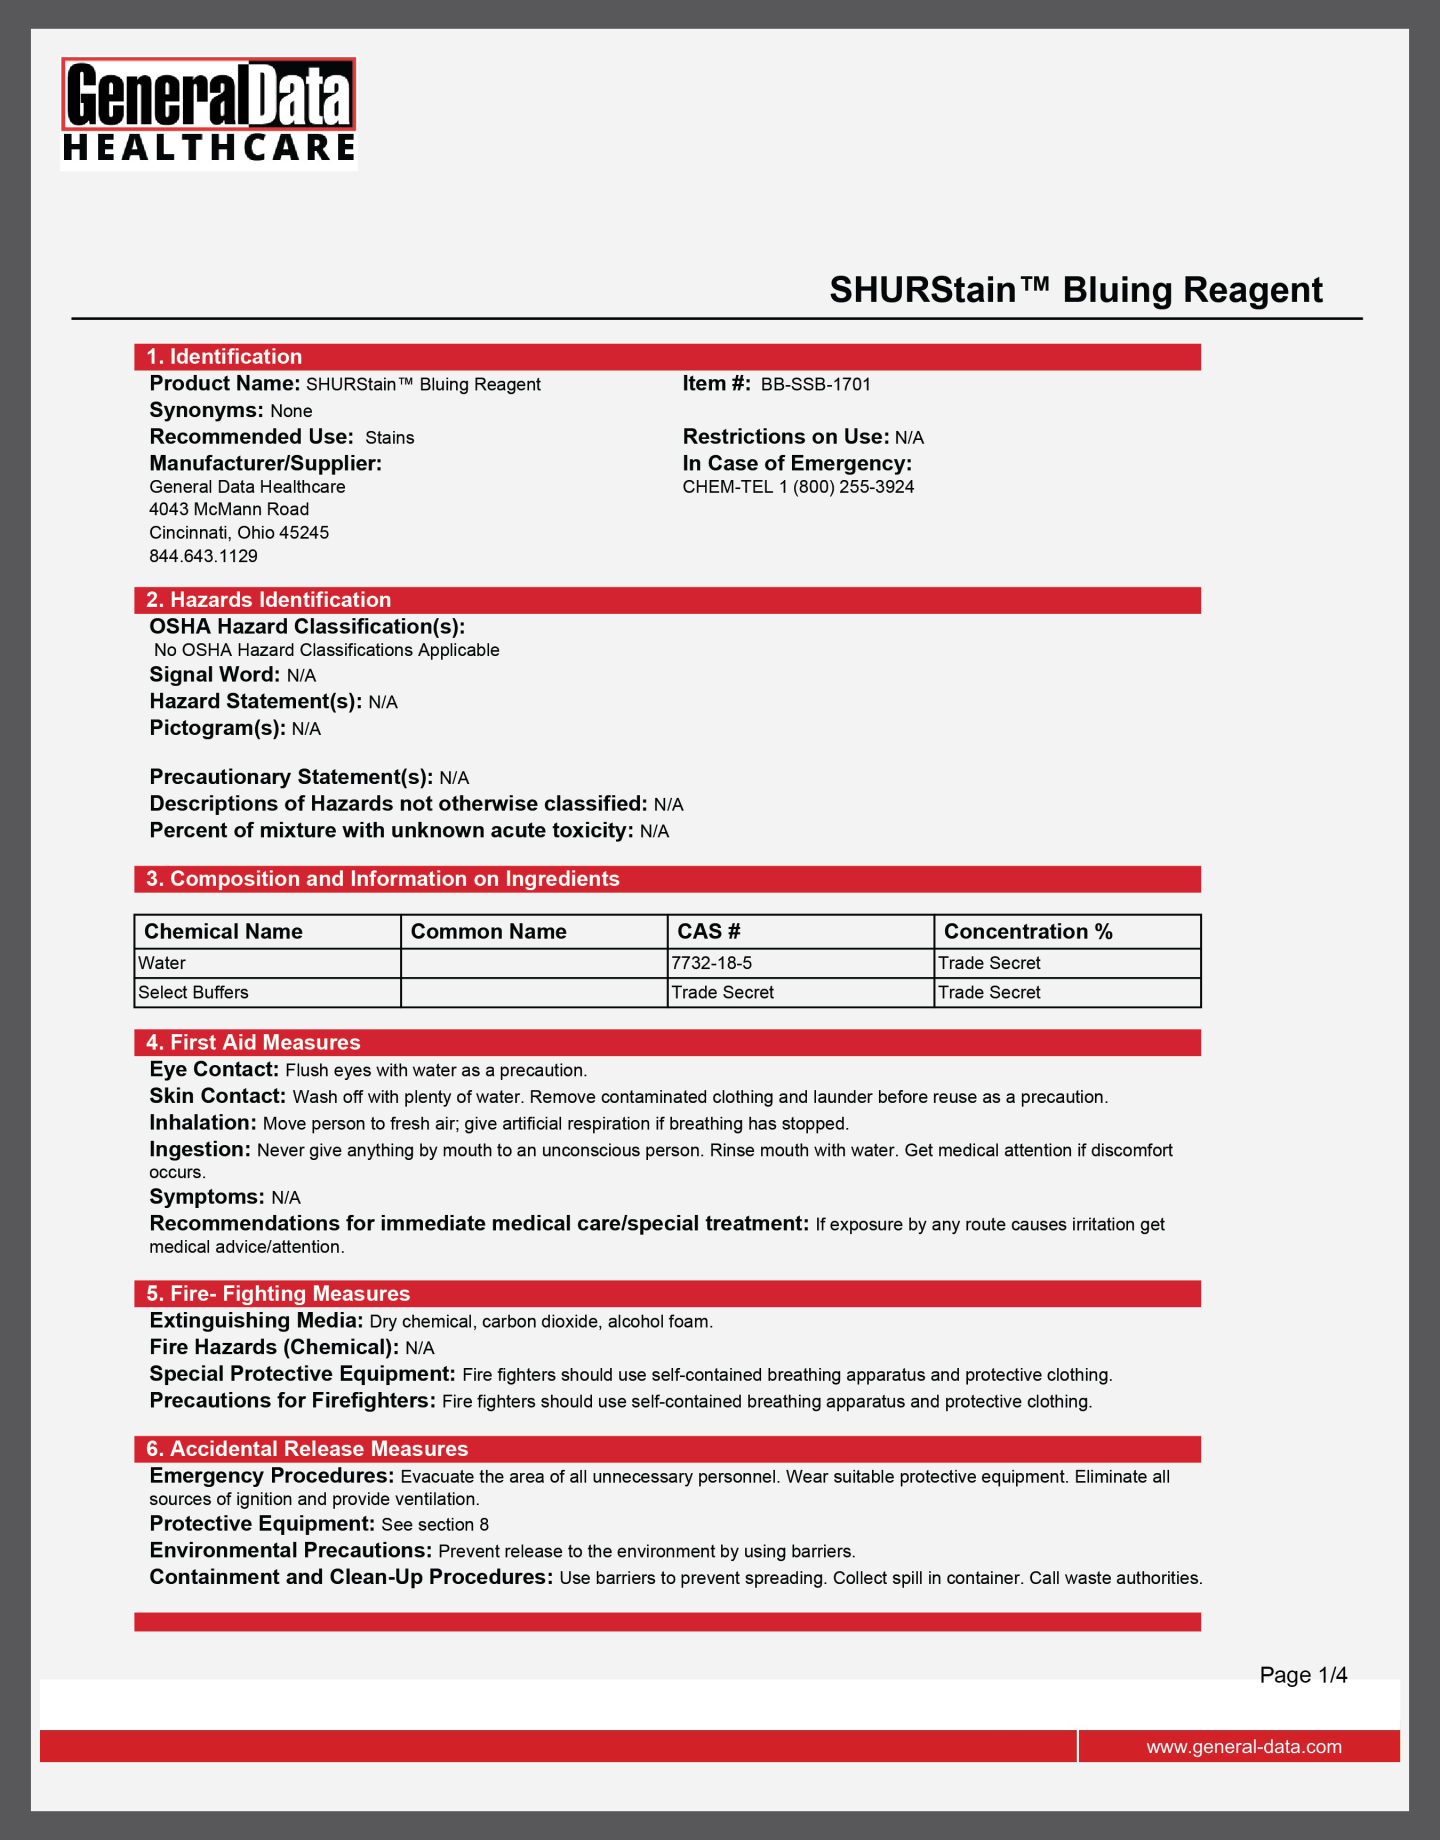 SHURStain Bluing Reagent Safety Data Sheet 